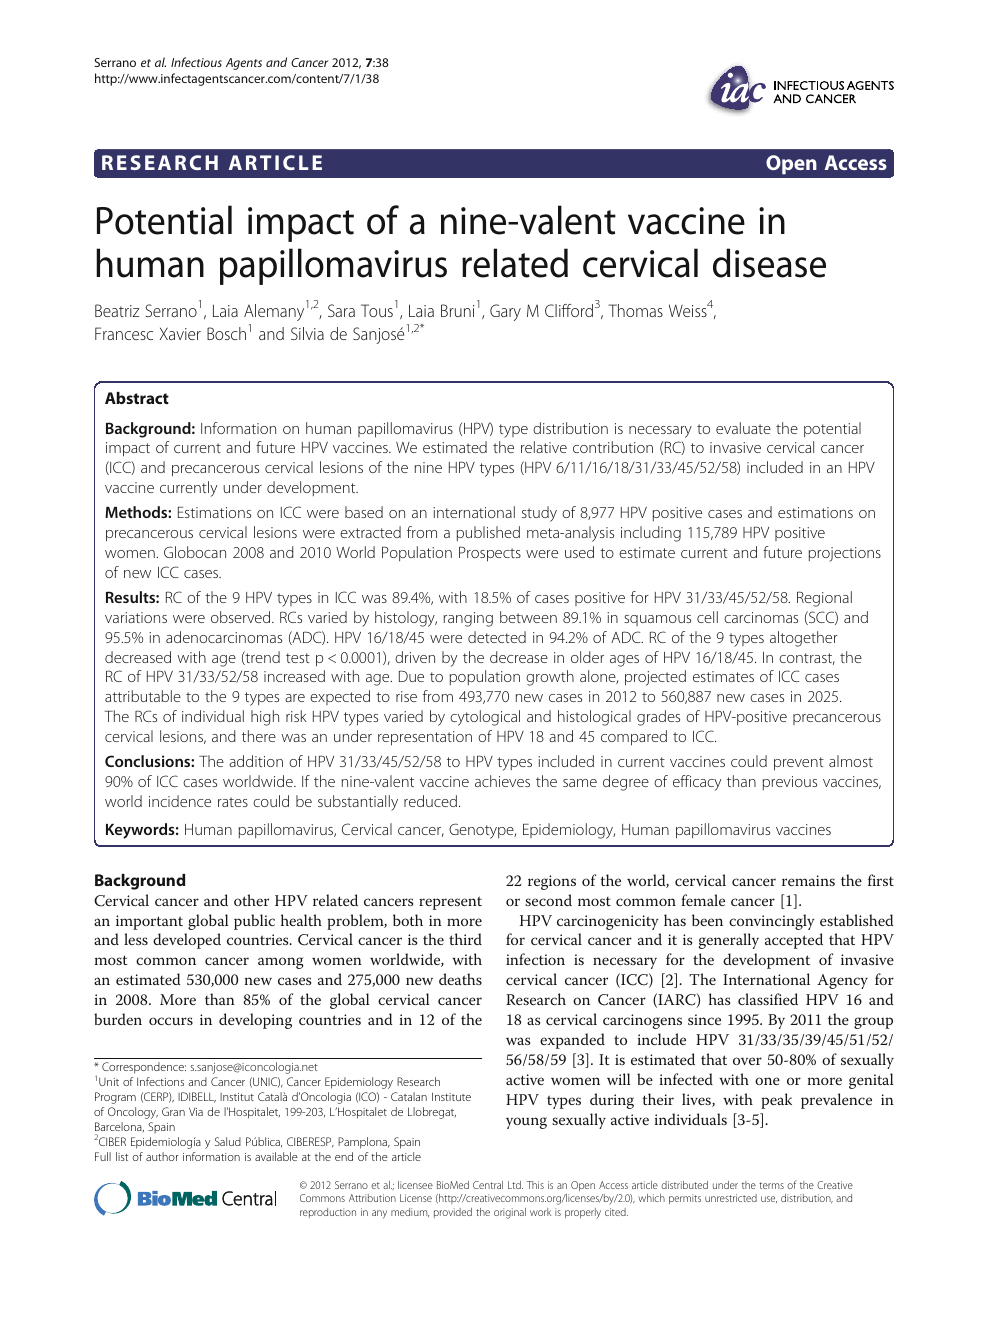 human papillomavirus hpv vaccine background paper)